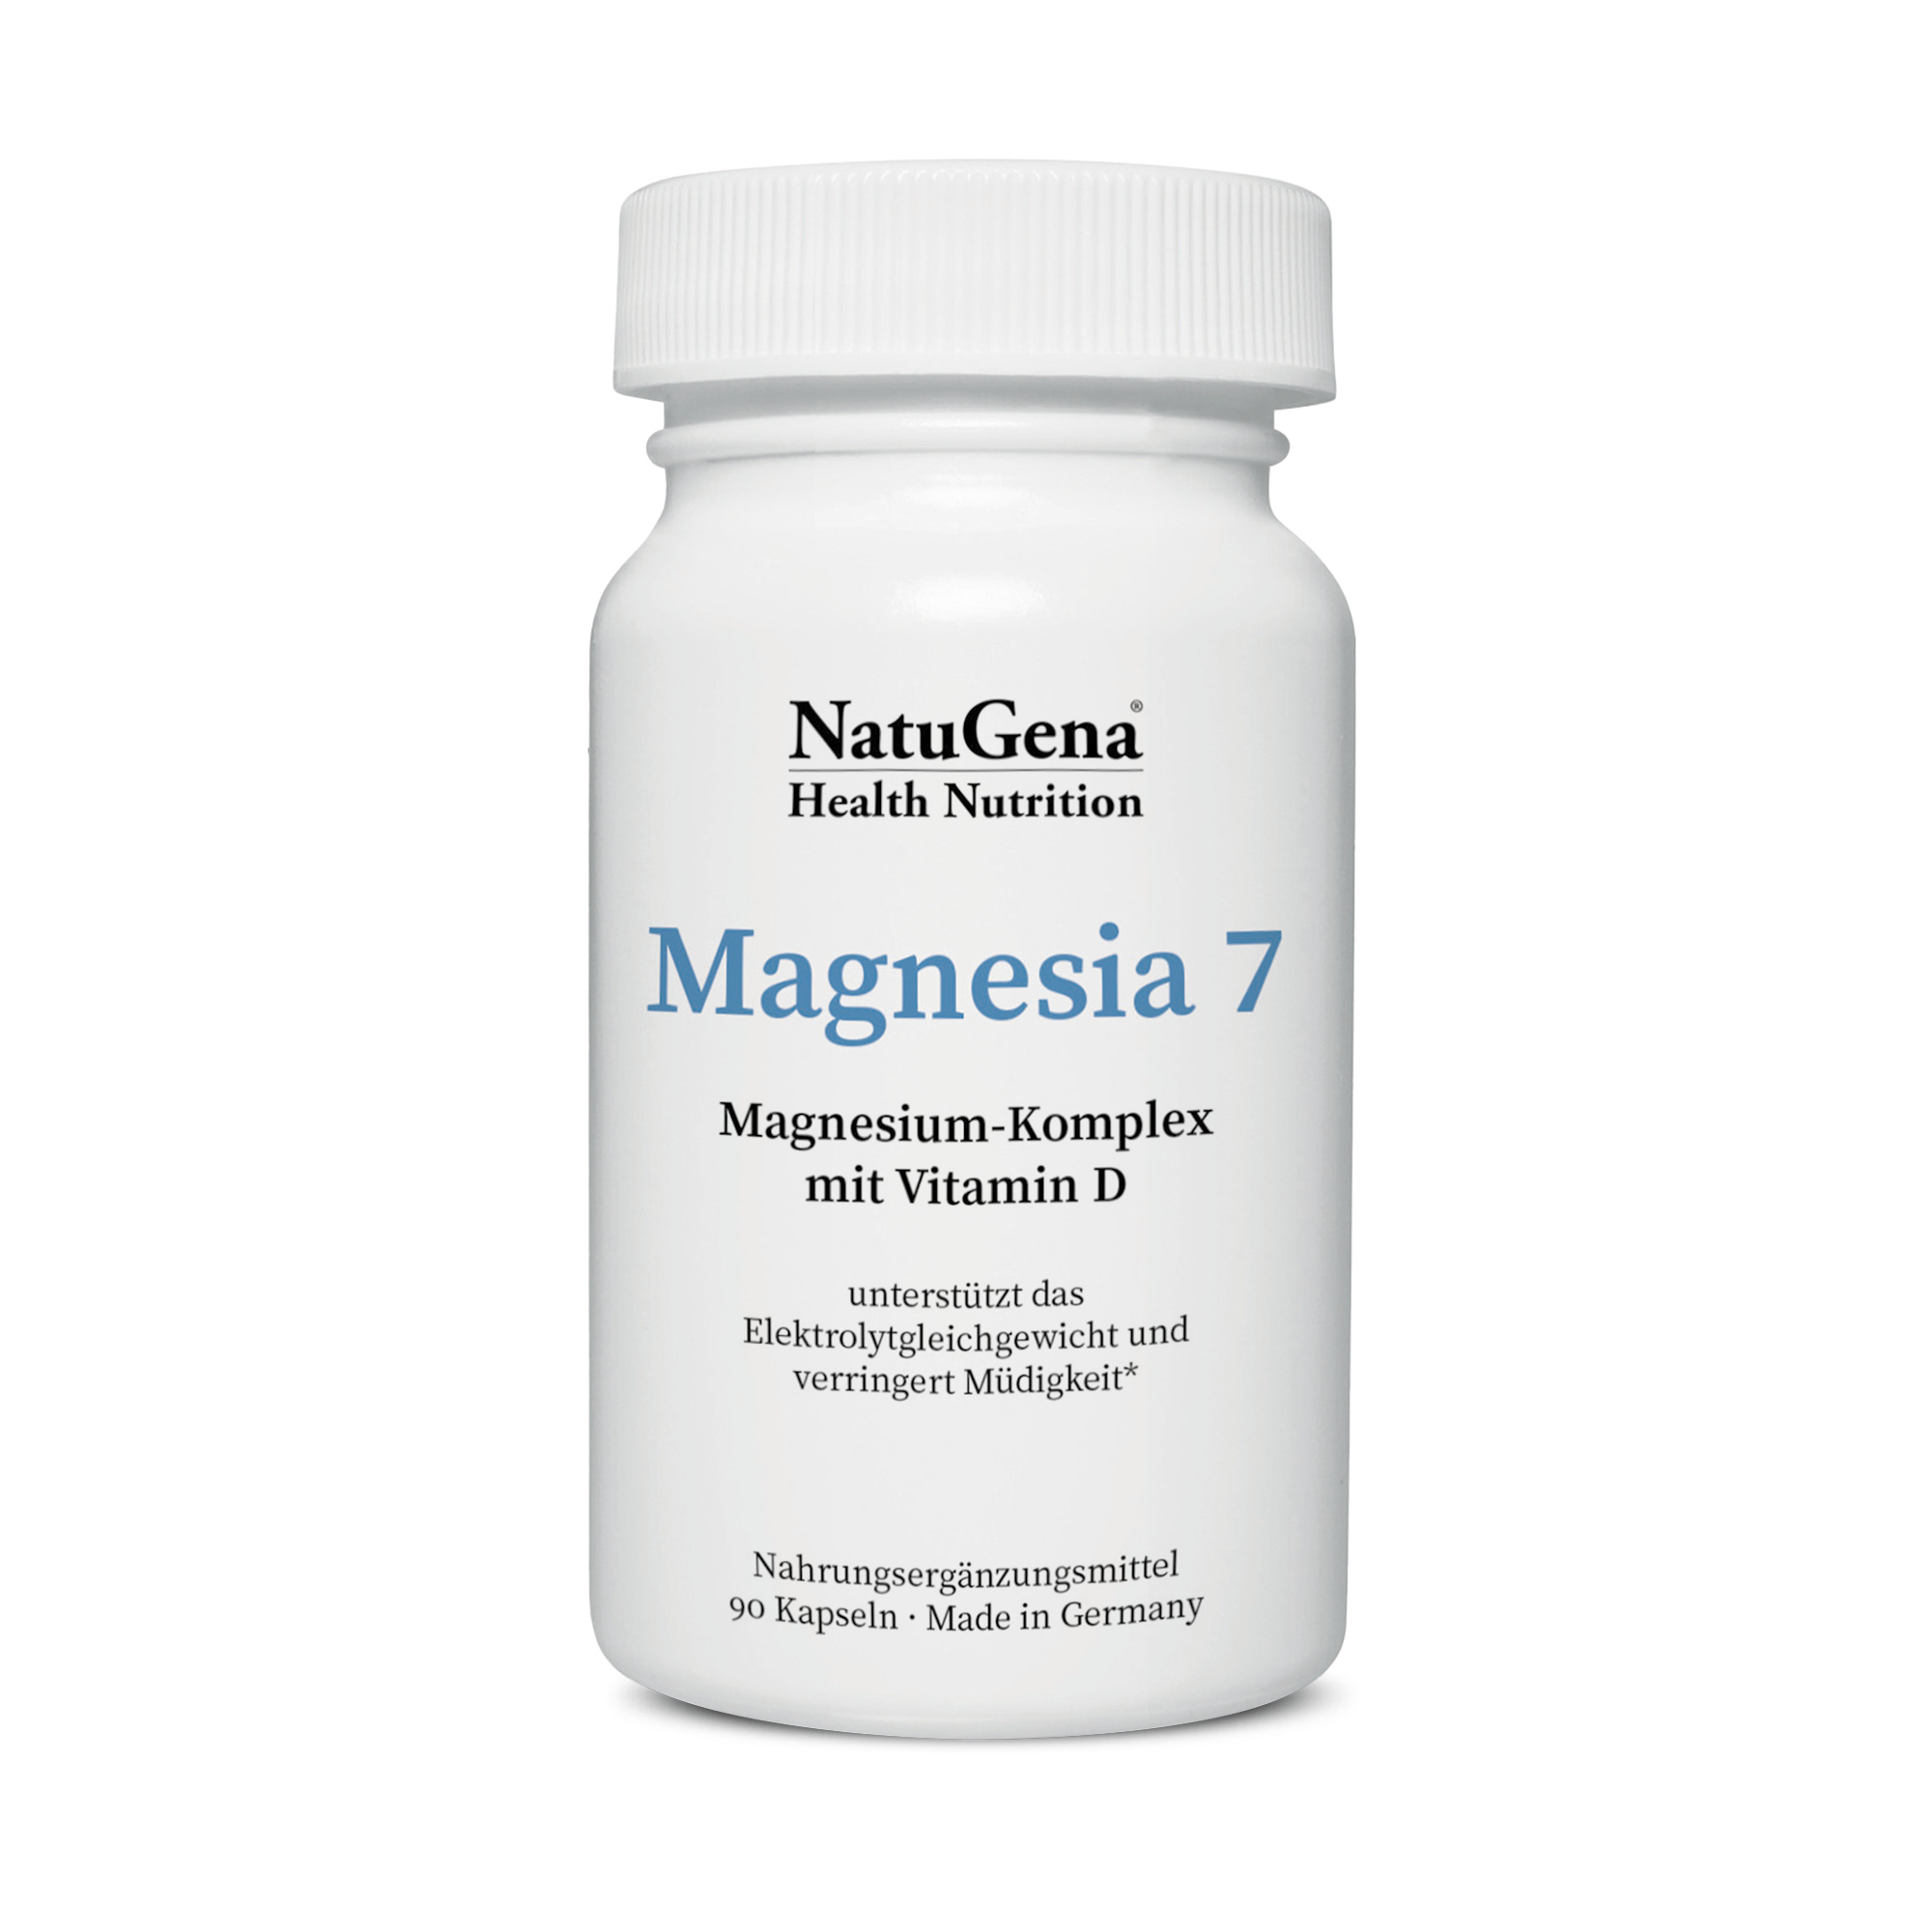 NatuGena Magnesia 7 | 90 Kapseln | Magnesium-Komplex mit Vitamin D | gluten- und laktosefrei